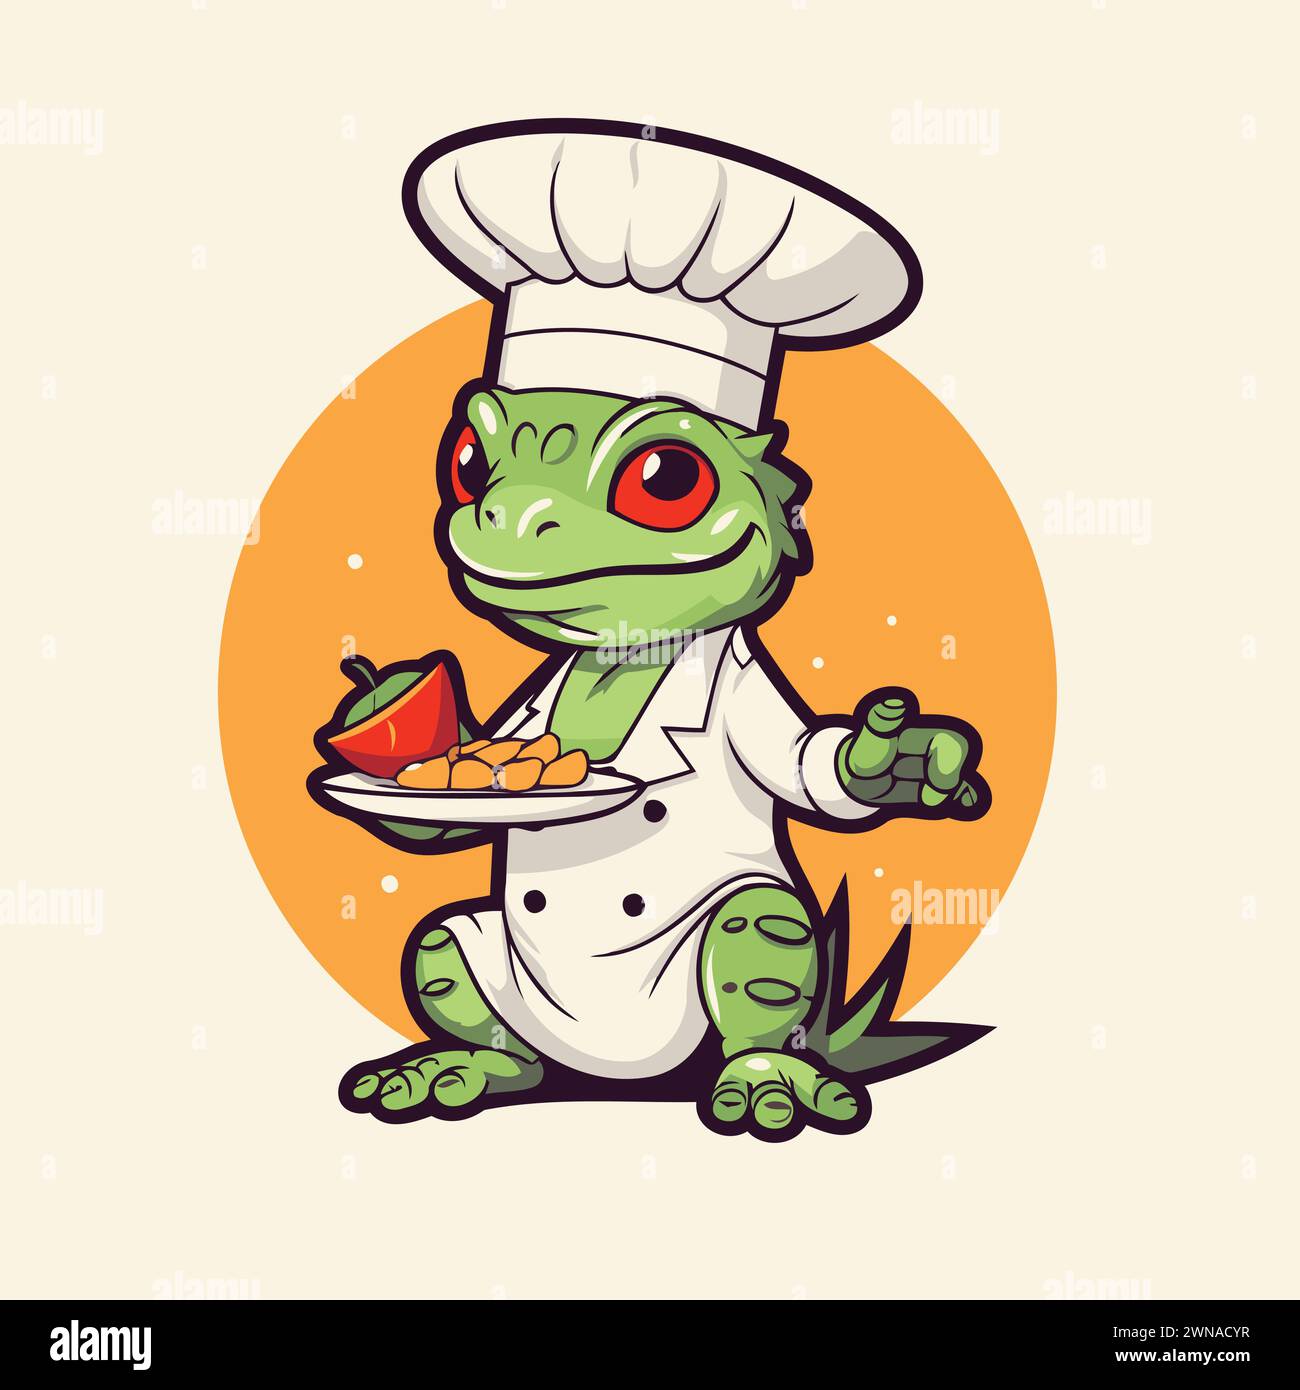 Personnage de dessin animé de chef de grenouille avec de la nourriture dans sa main. Illustration vectorielle. Illustration de Vecteur